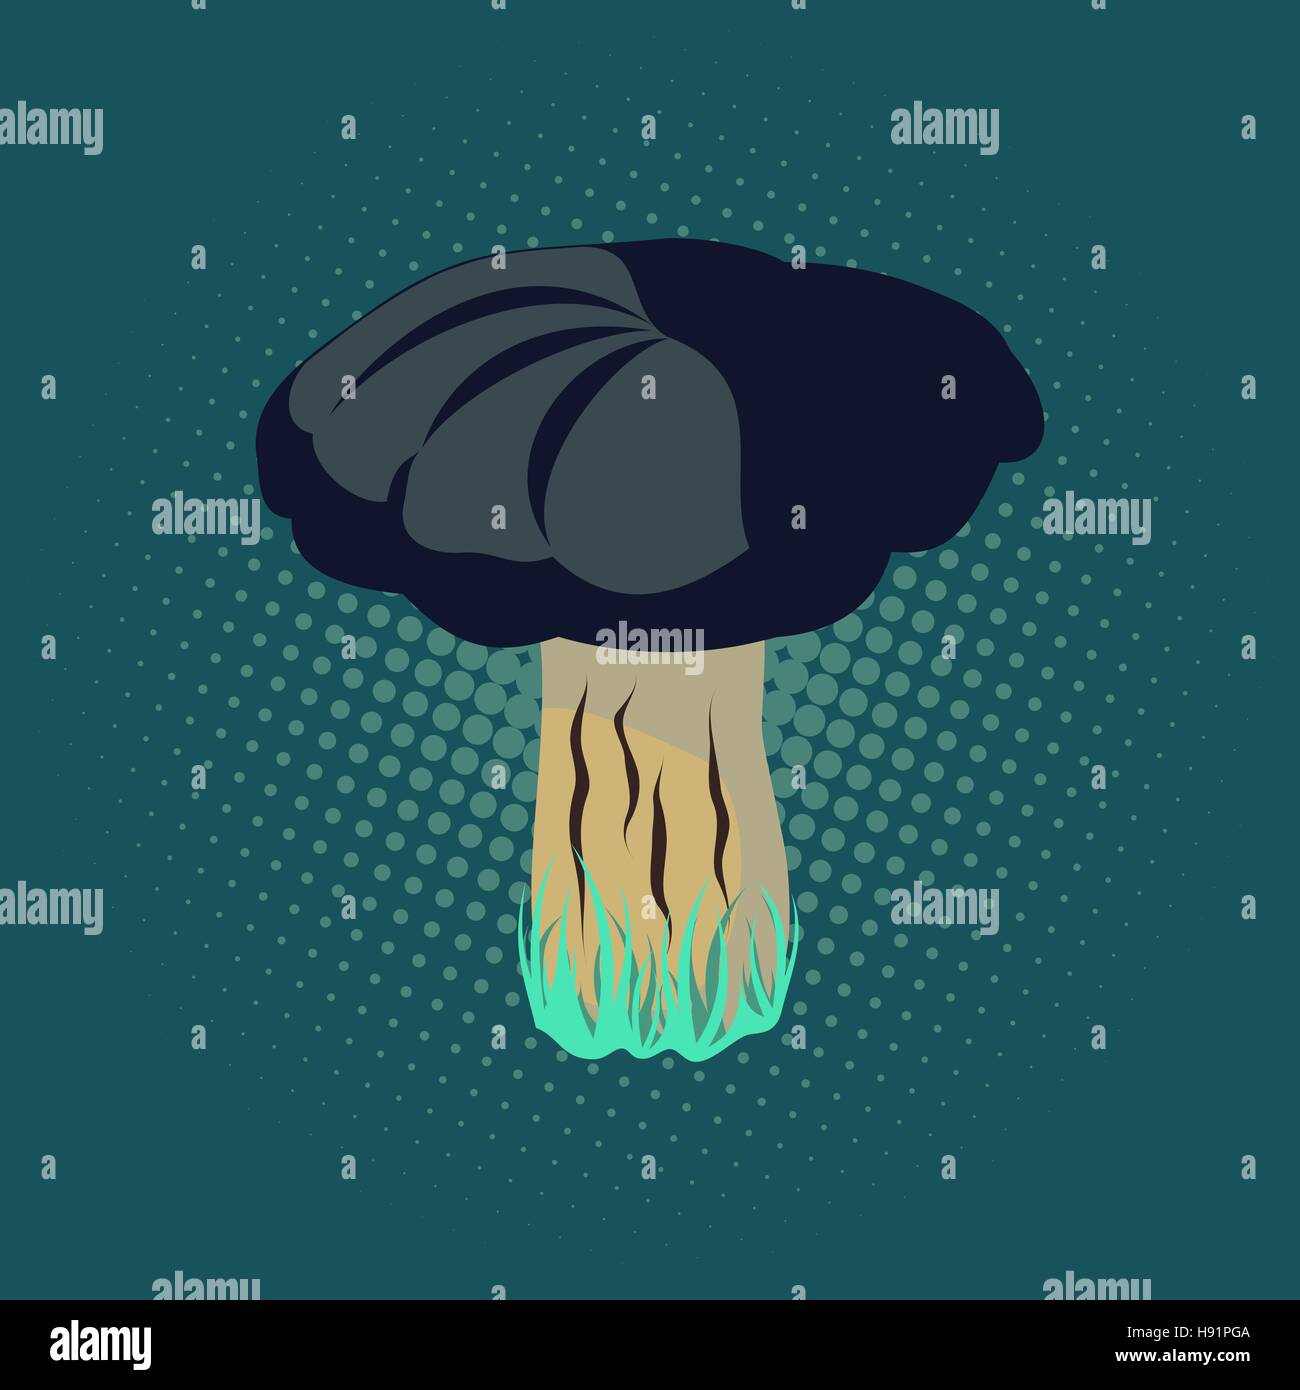 Vector illustration of mushroom, pop art retro illustration. Stock Vector